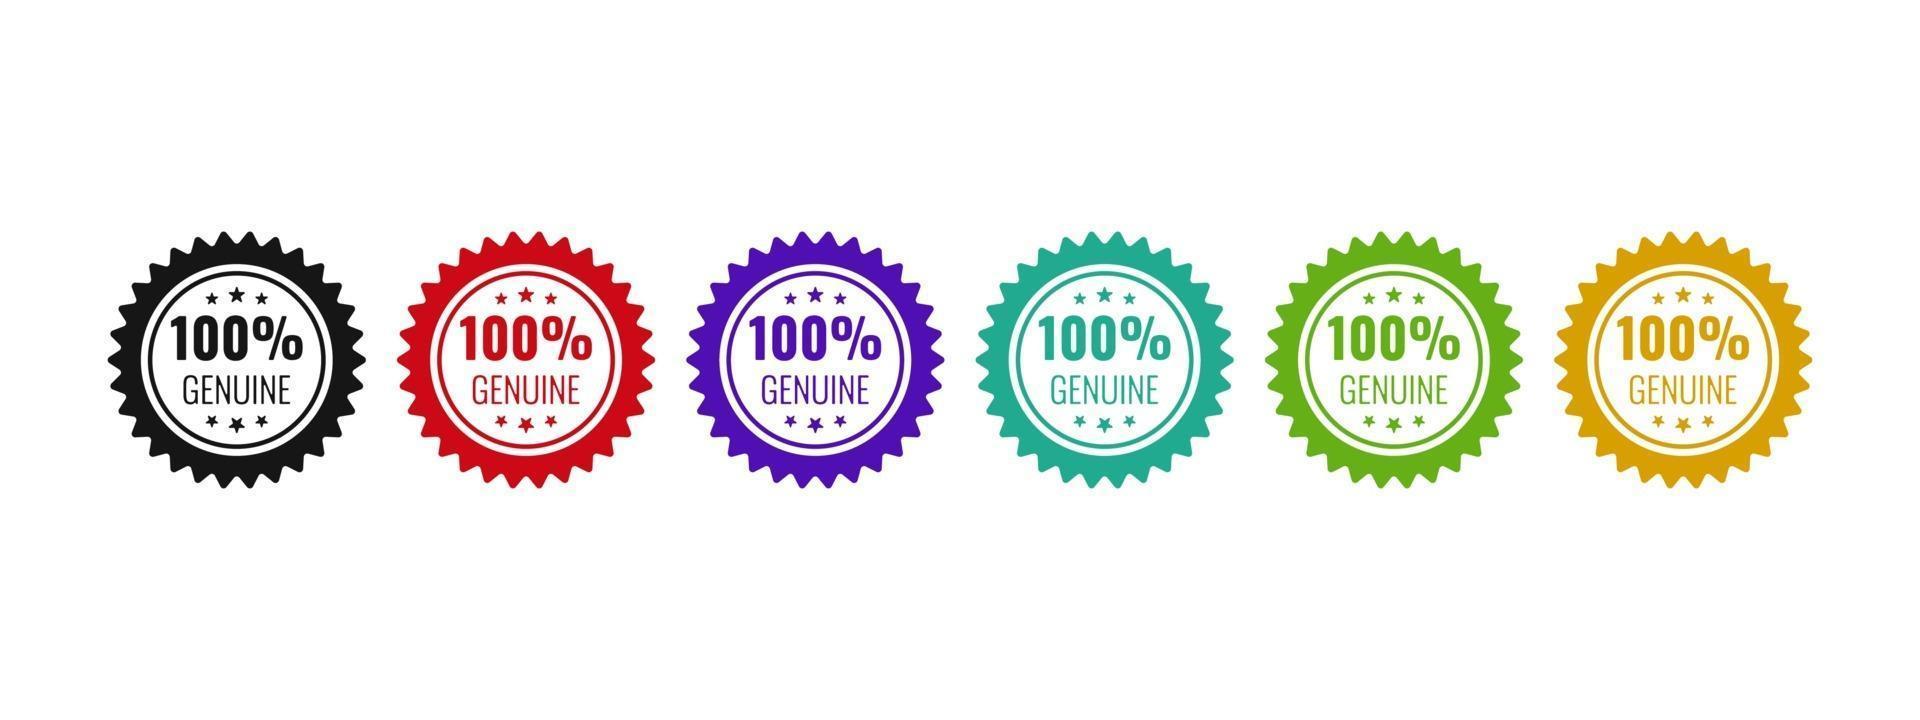 véritable conception de badge 100 logo. icône illustration vectorielle originale pour produit de confiance. vecteur